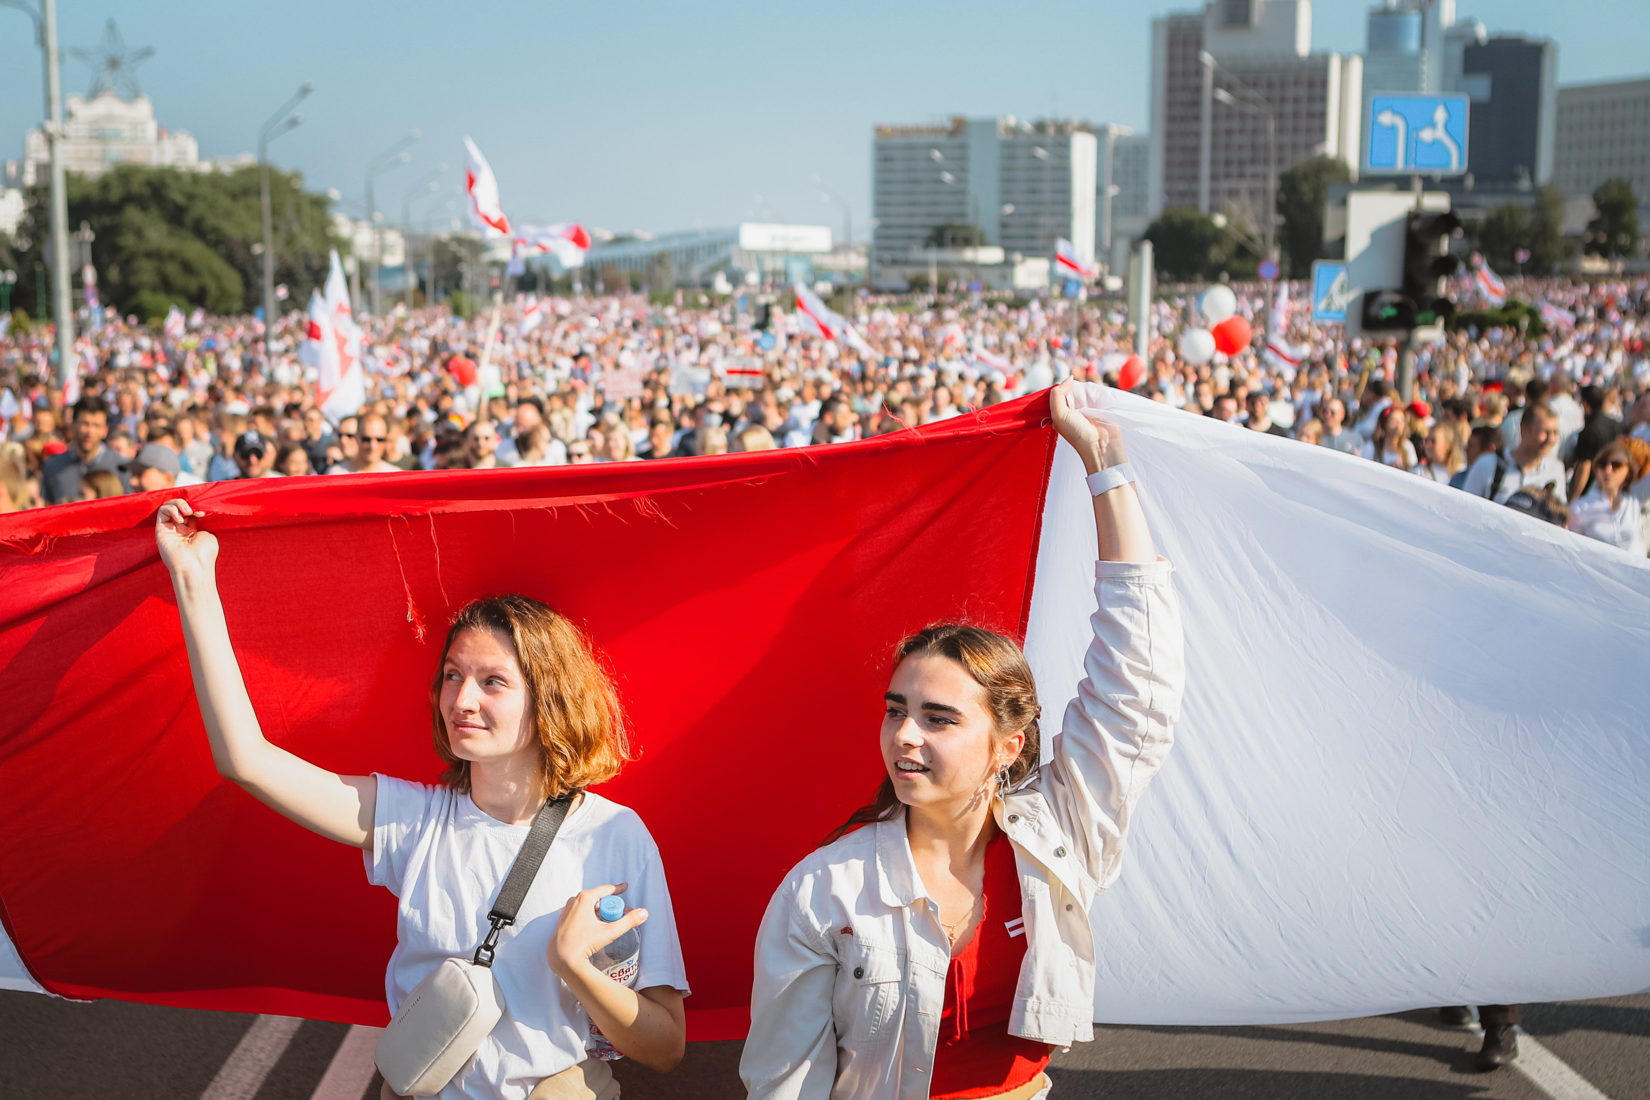 Två belarusiska kvinnor står håller upp landets flagg, i bakgrunden ser man ett folkhav av protesterande belaruser